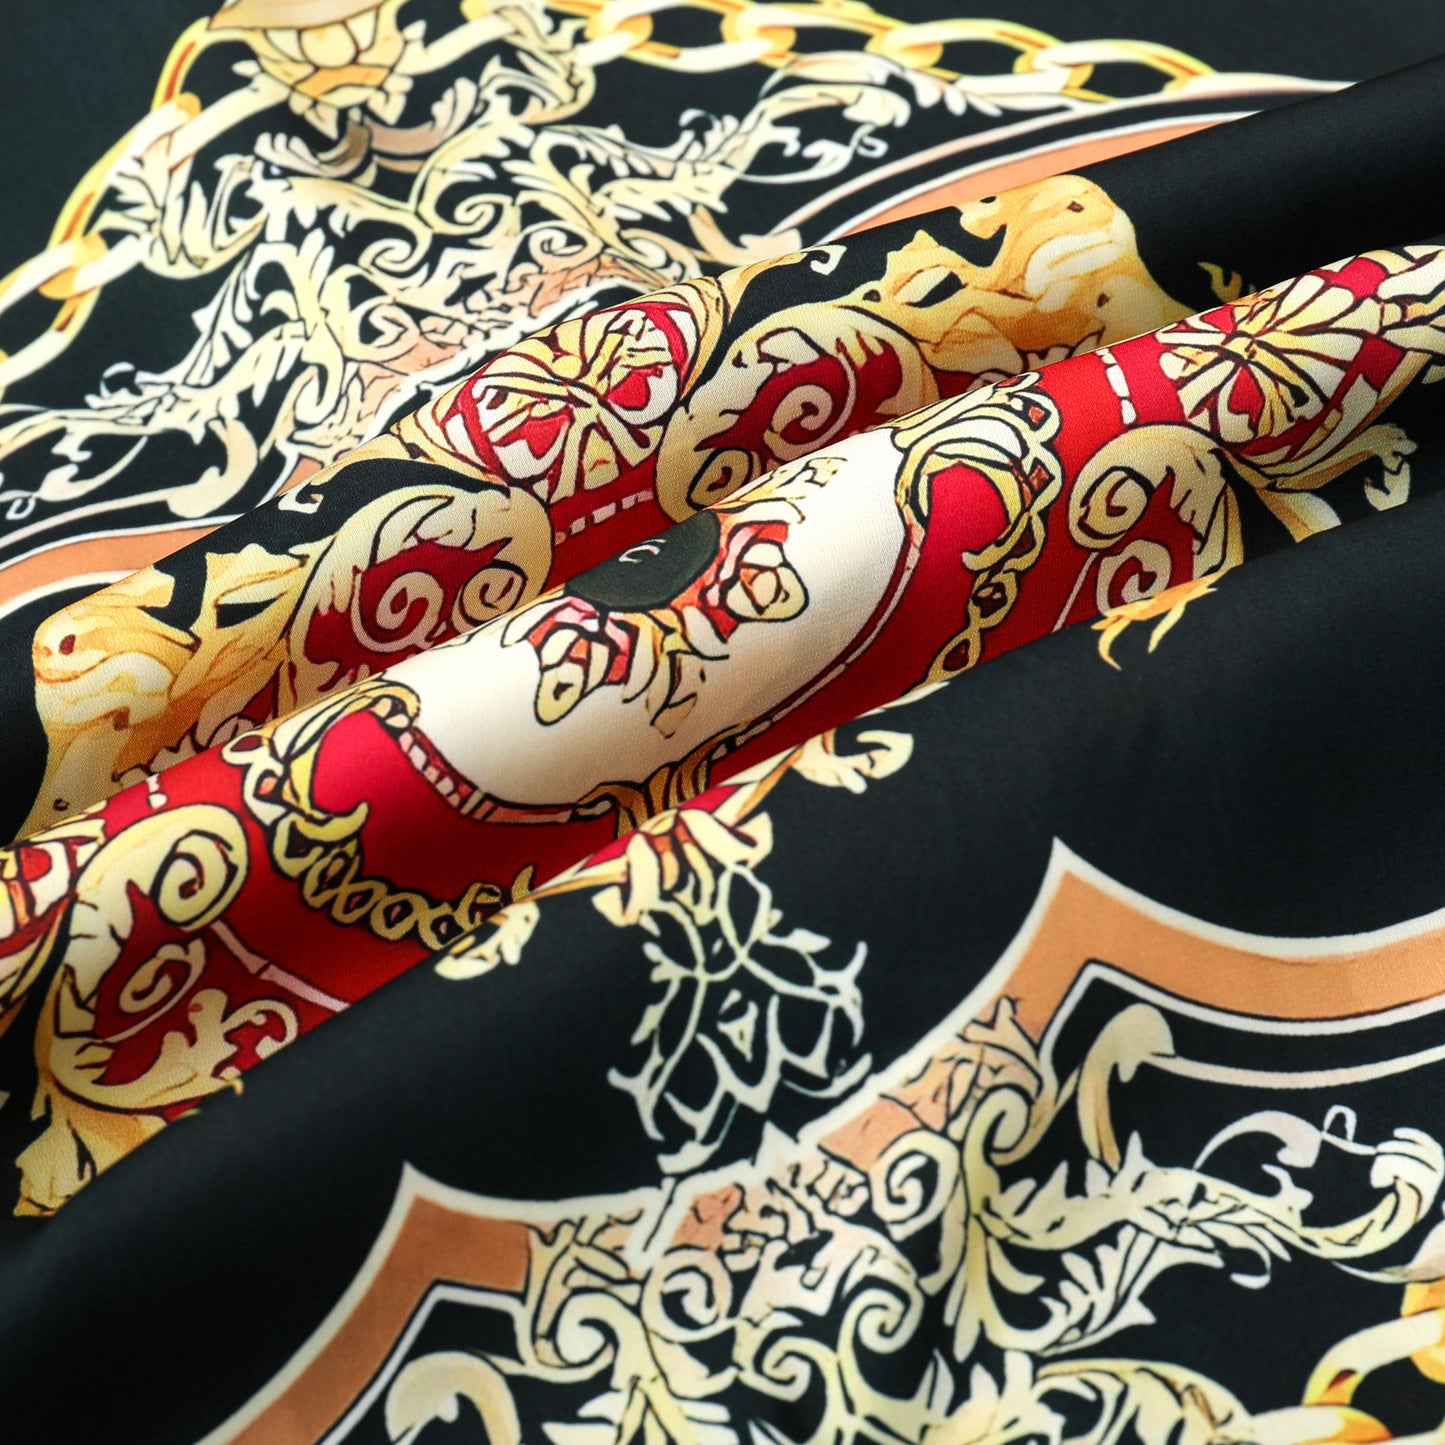 Golden Baroque Silk Fiber Short Sleeve Shirt with Chain Accent